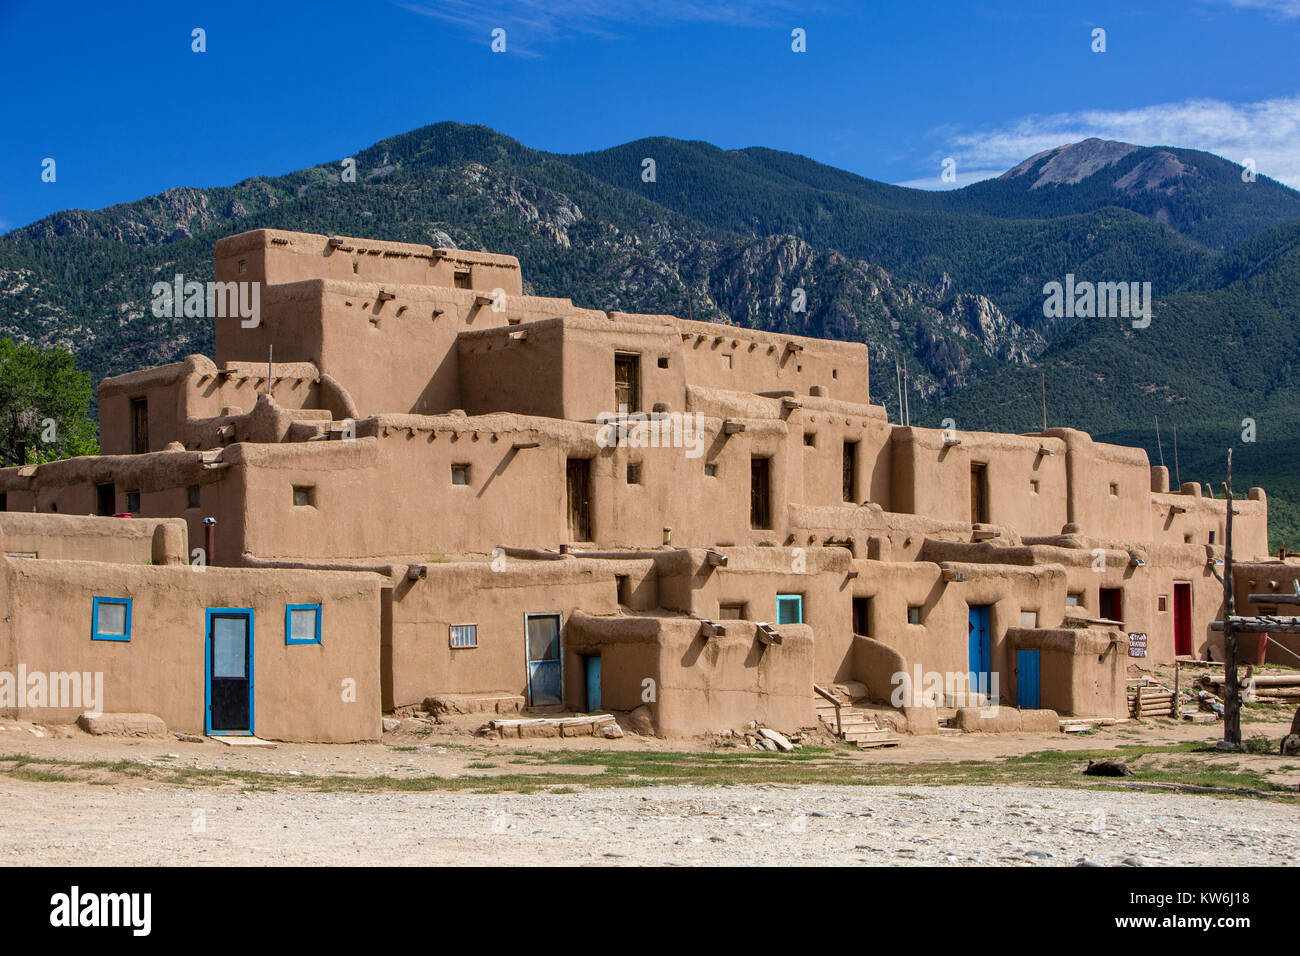 Taos Pueblo, New Mexico, United States Stock Photo